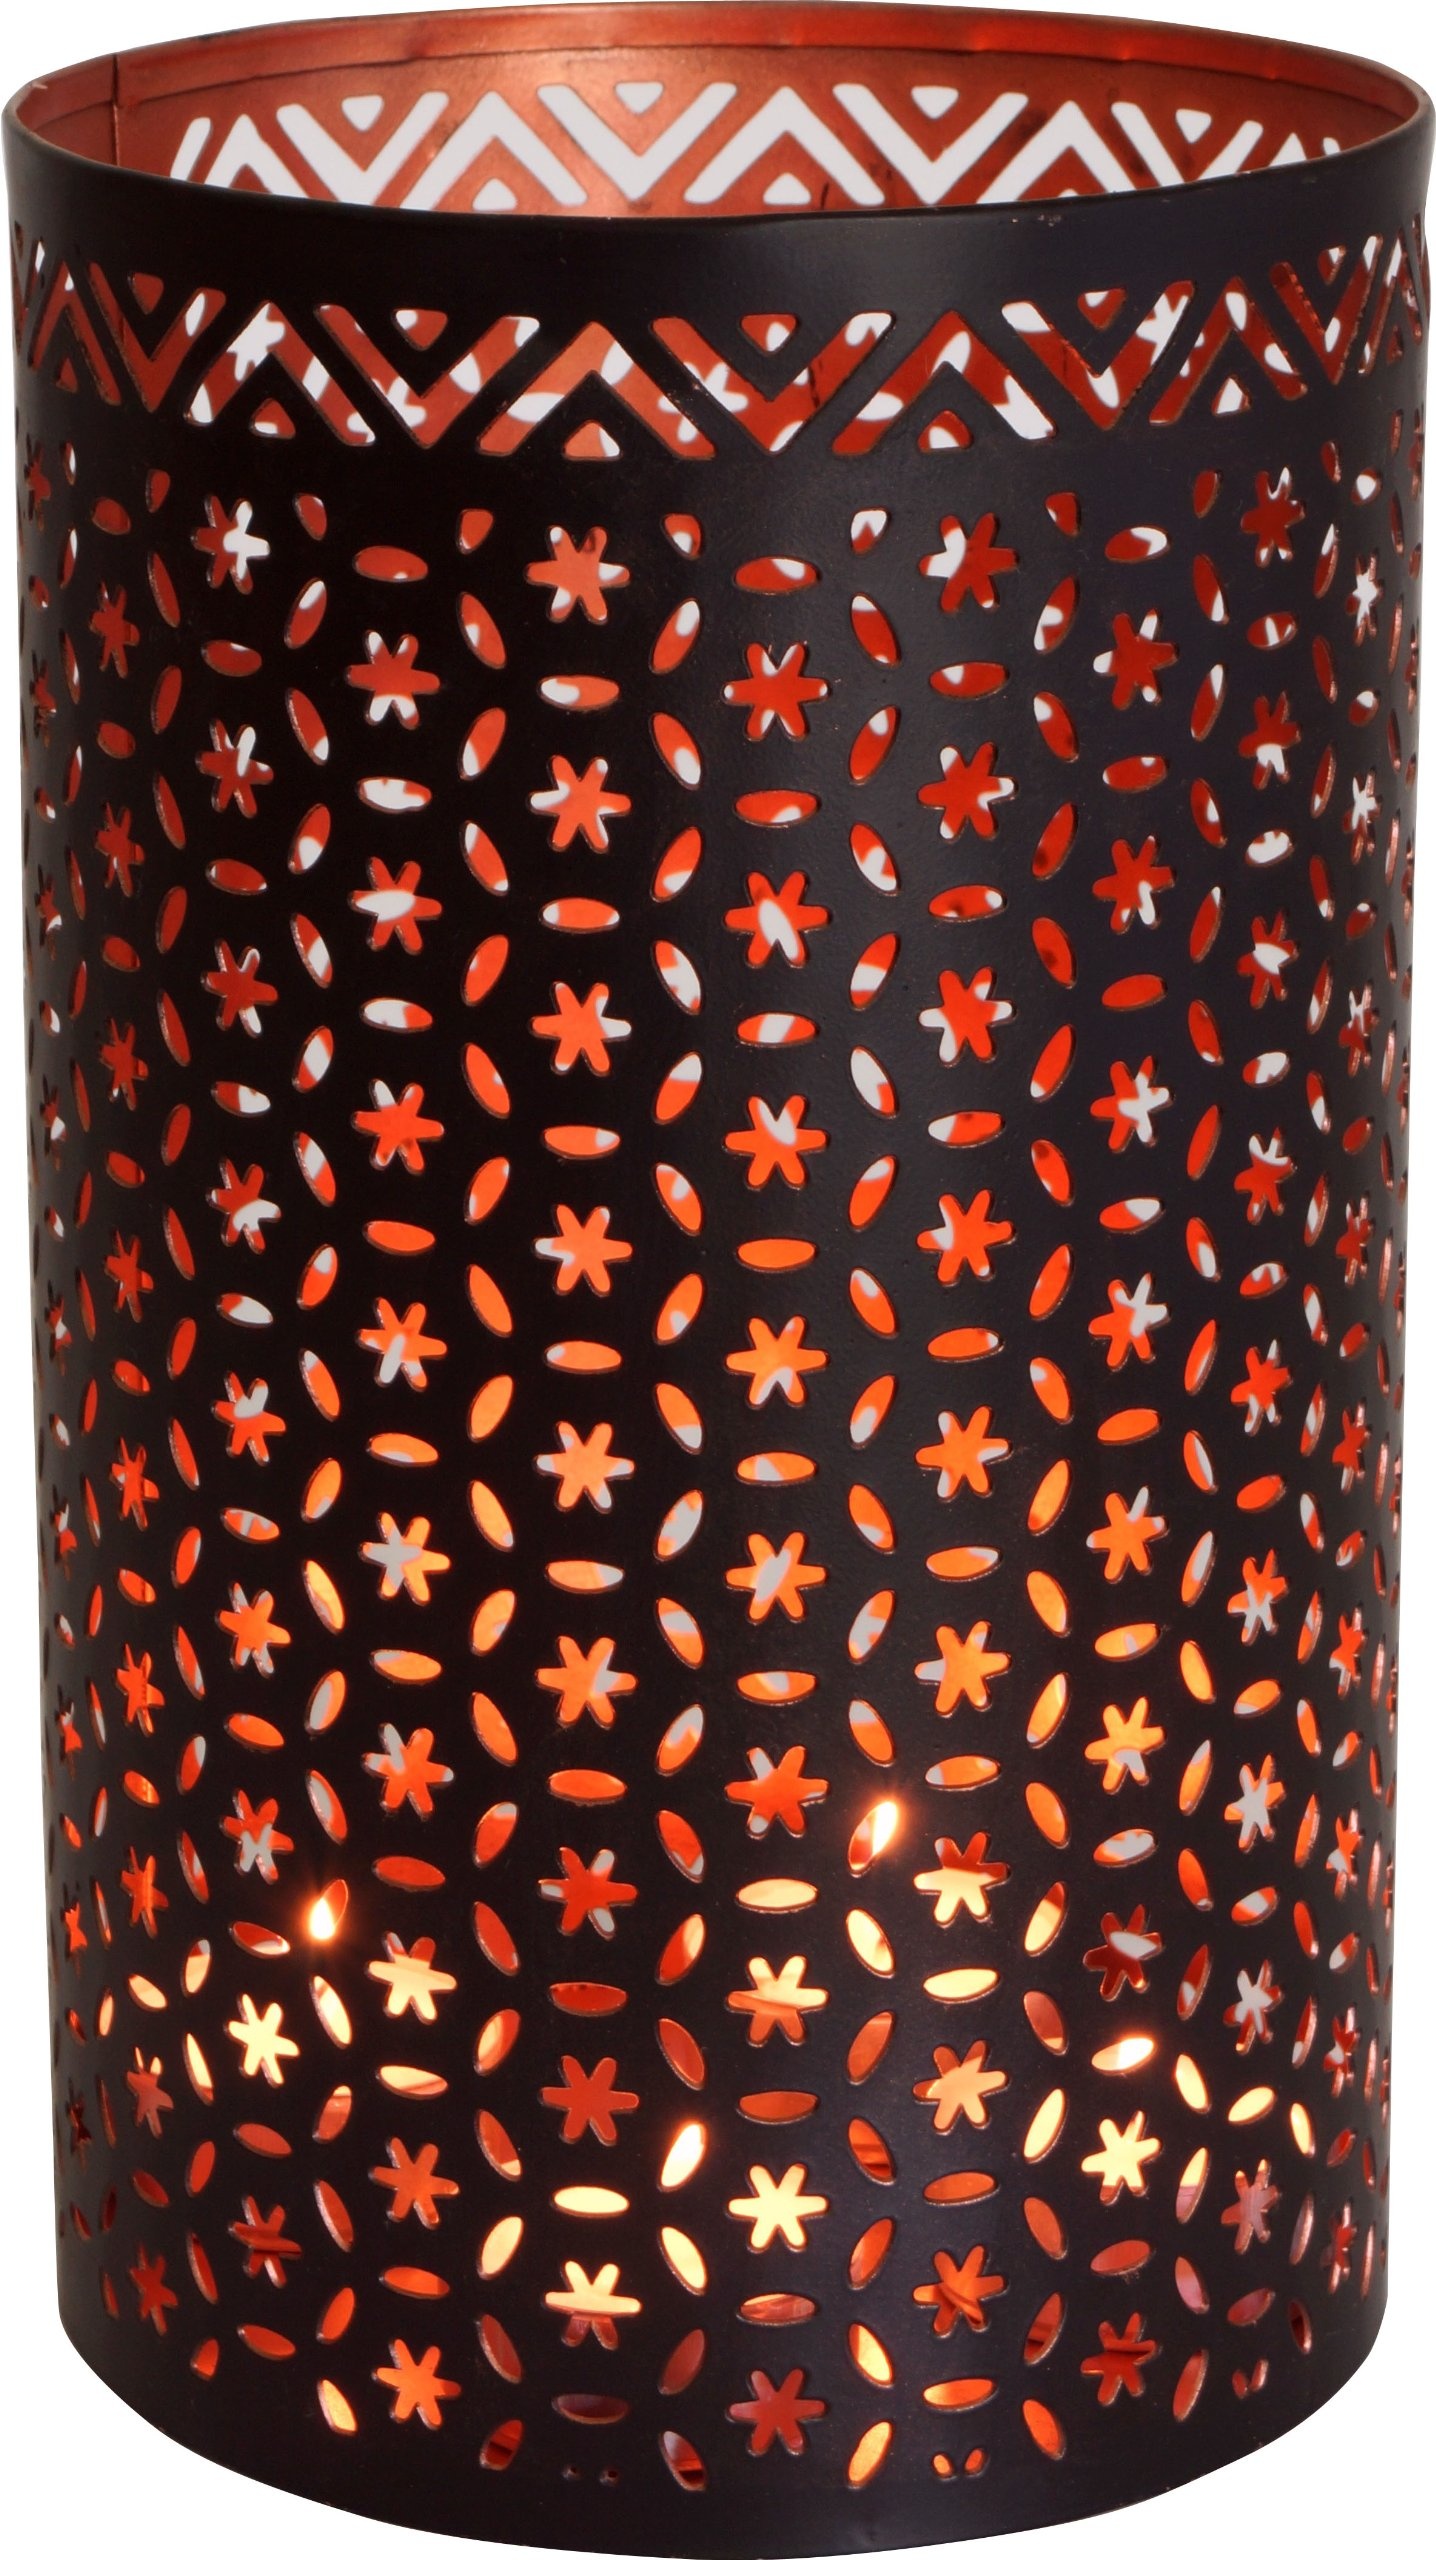 GURU SHOP Runde Metall Windlicht Leuchte, Passend für Teelicht Kerzen Oder als Deckenlampe Verwendbar - Modell 3, Braun, Größe: 20 cm, Teelichthalter & Kerzenhalter